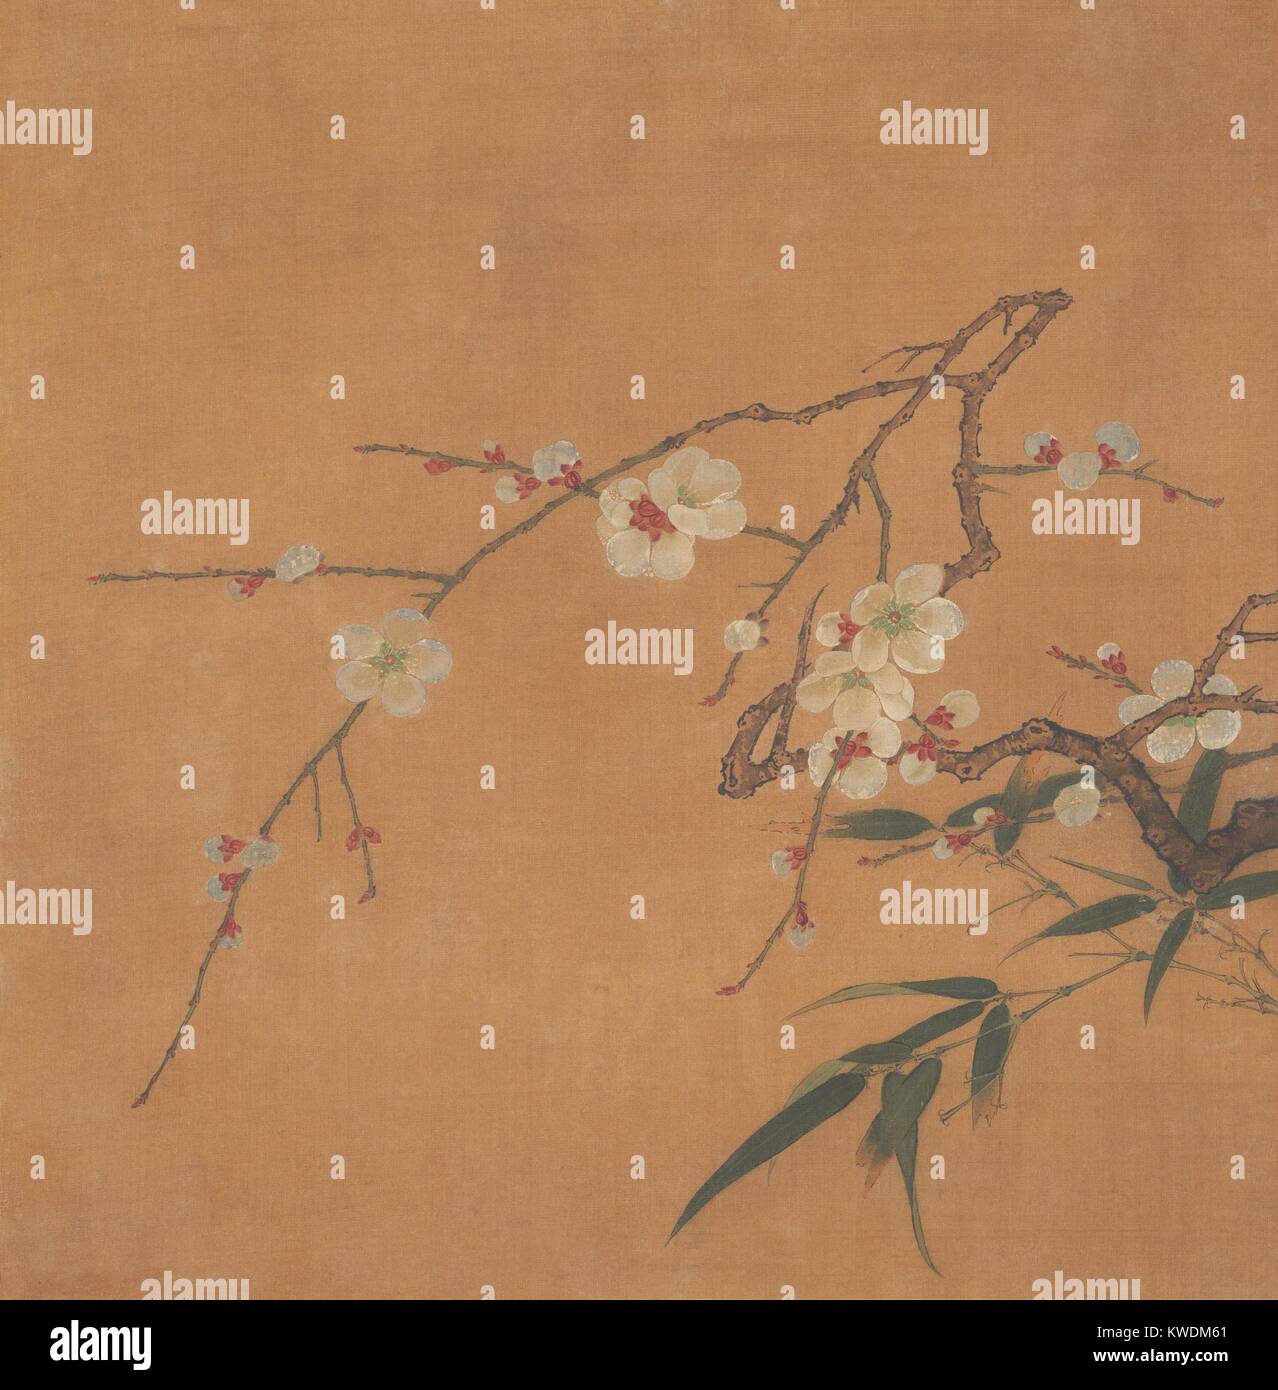 La floraison de prune et de bambou, Chinois, 17e ch., peinture, feuille d'album, encre, couleur sur soie. Les branches de fleurs et feuilles sont peints dans un style réaliste délicat. Des fleurs ont été l'un des principaux sujets de la peinture traditionnelle chinoise (BSLOC   2017 16 10) Banque D'Images